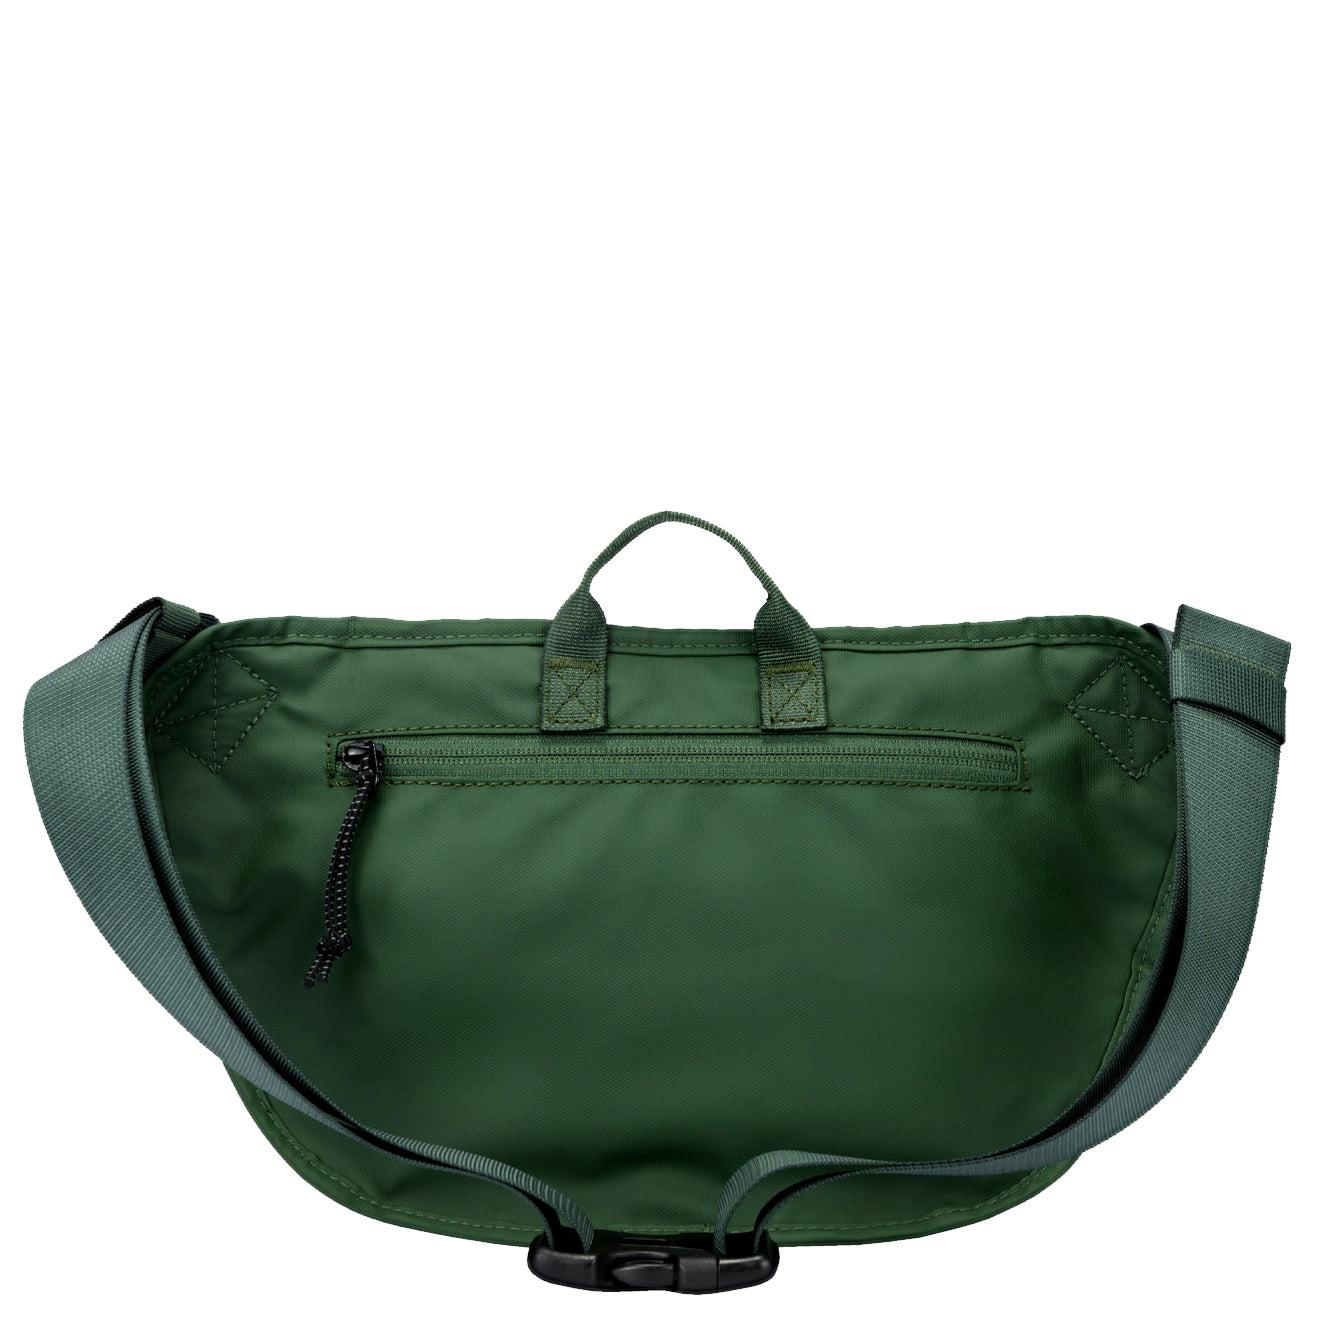 Lululemon Everywhere Belt Bag Large 2L - Green/Olive/dark Forest